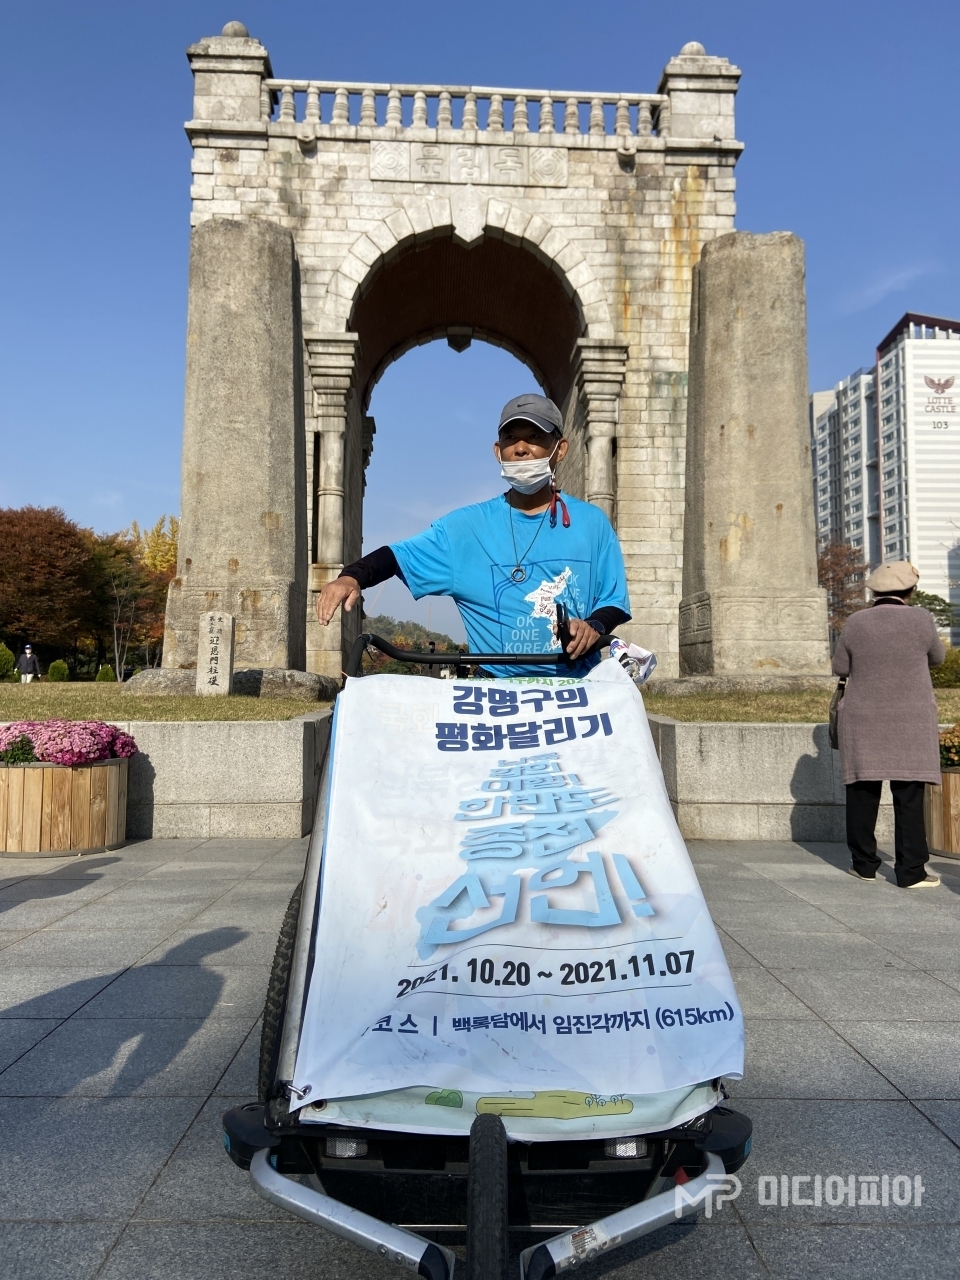 11월 6일, 독립문 앞에서의 강명구 마라토너 / 사진 촬영=강승혁 전문 기자